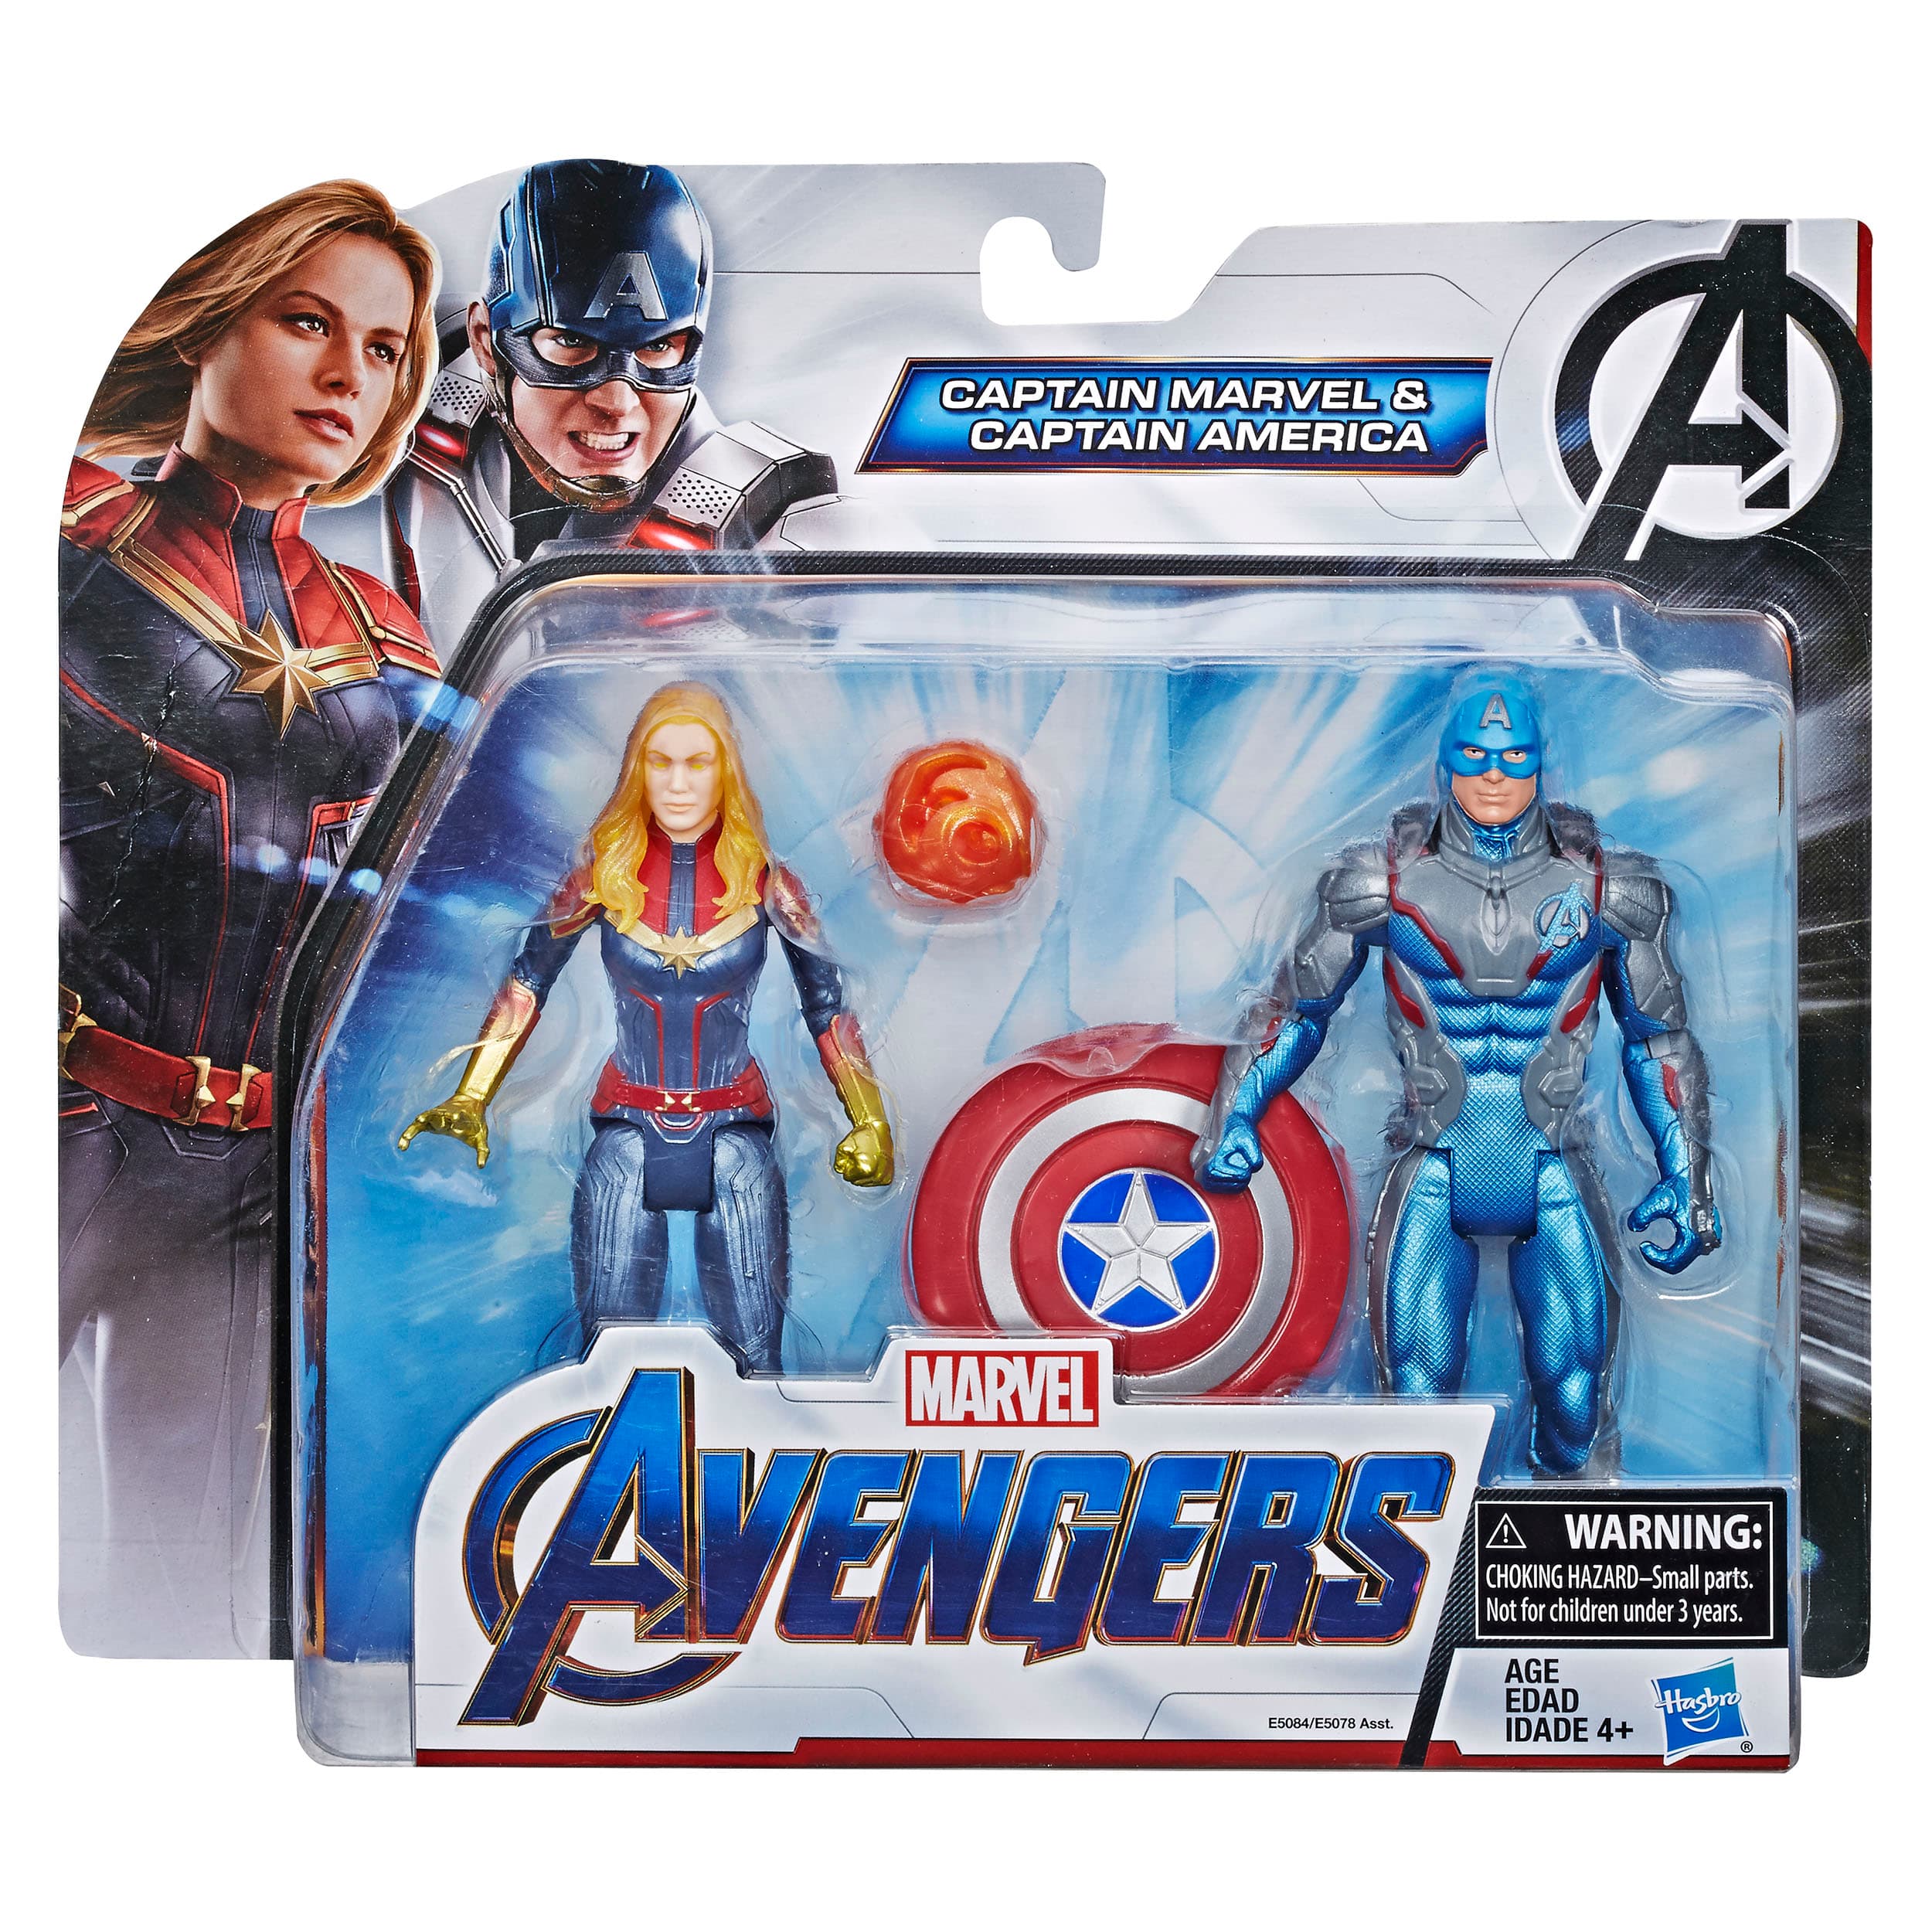 Endgame Hero Captain Marvel 6-Inch Action Figure Hasbro 2019 Avengers 